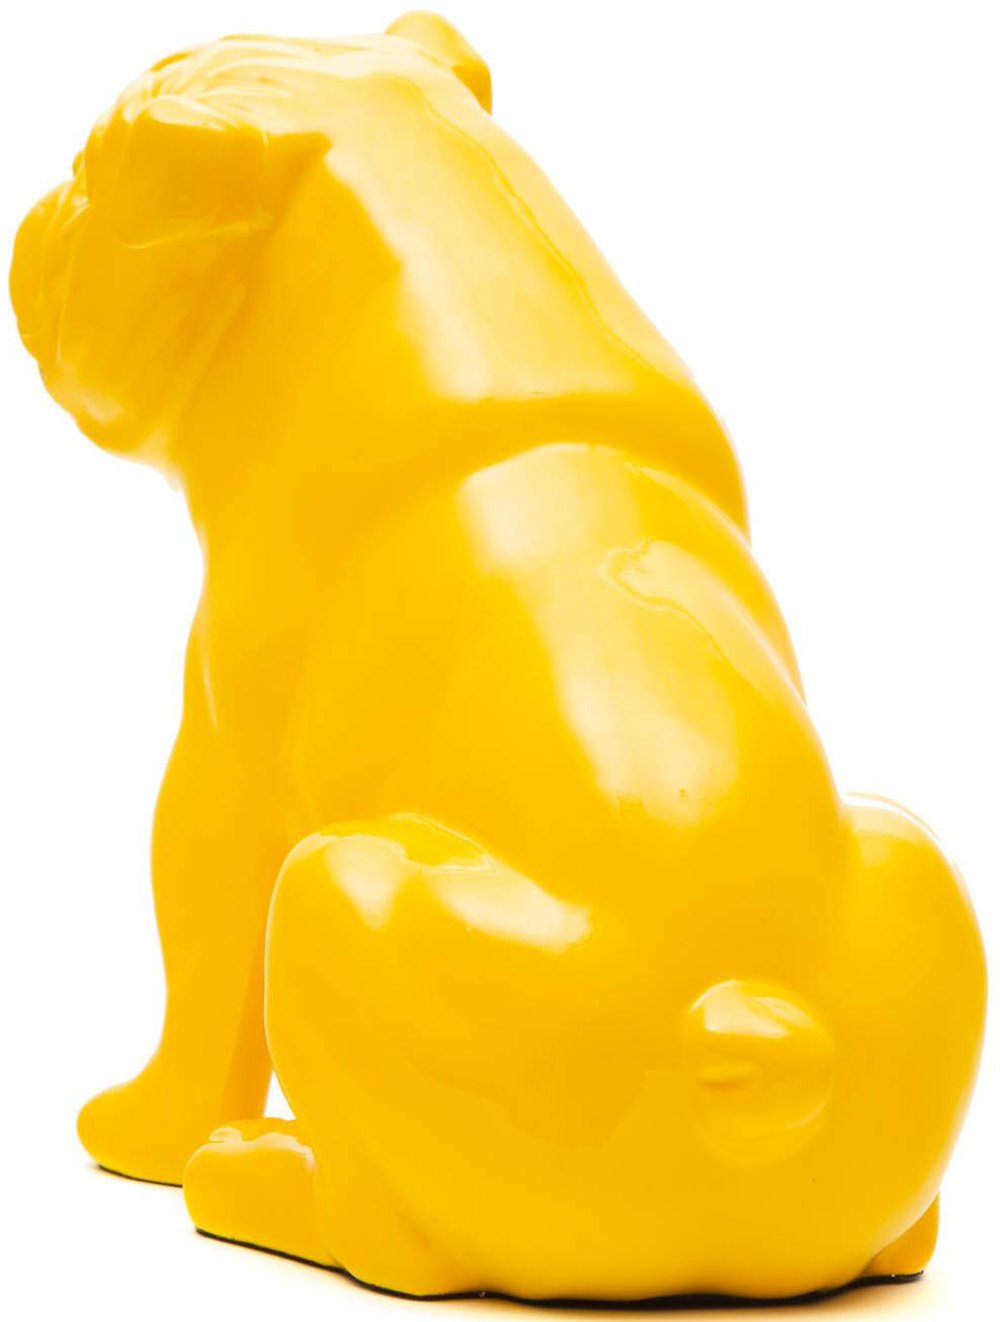 NAUNET Bulldog amarillo sentado